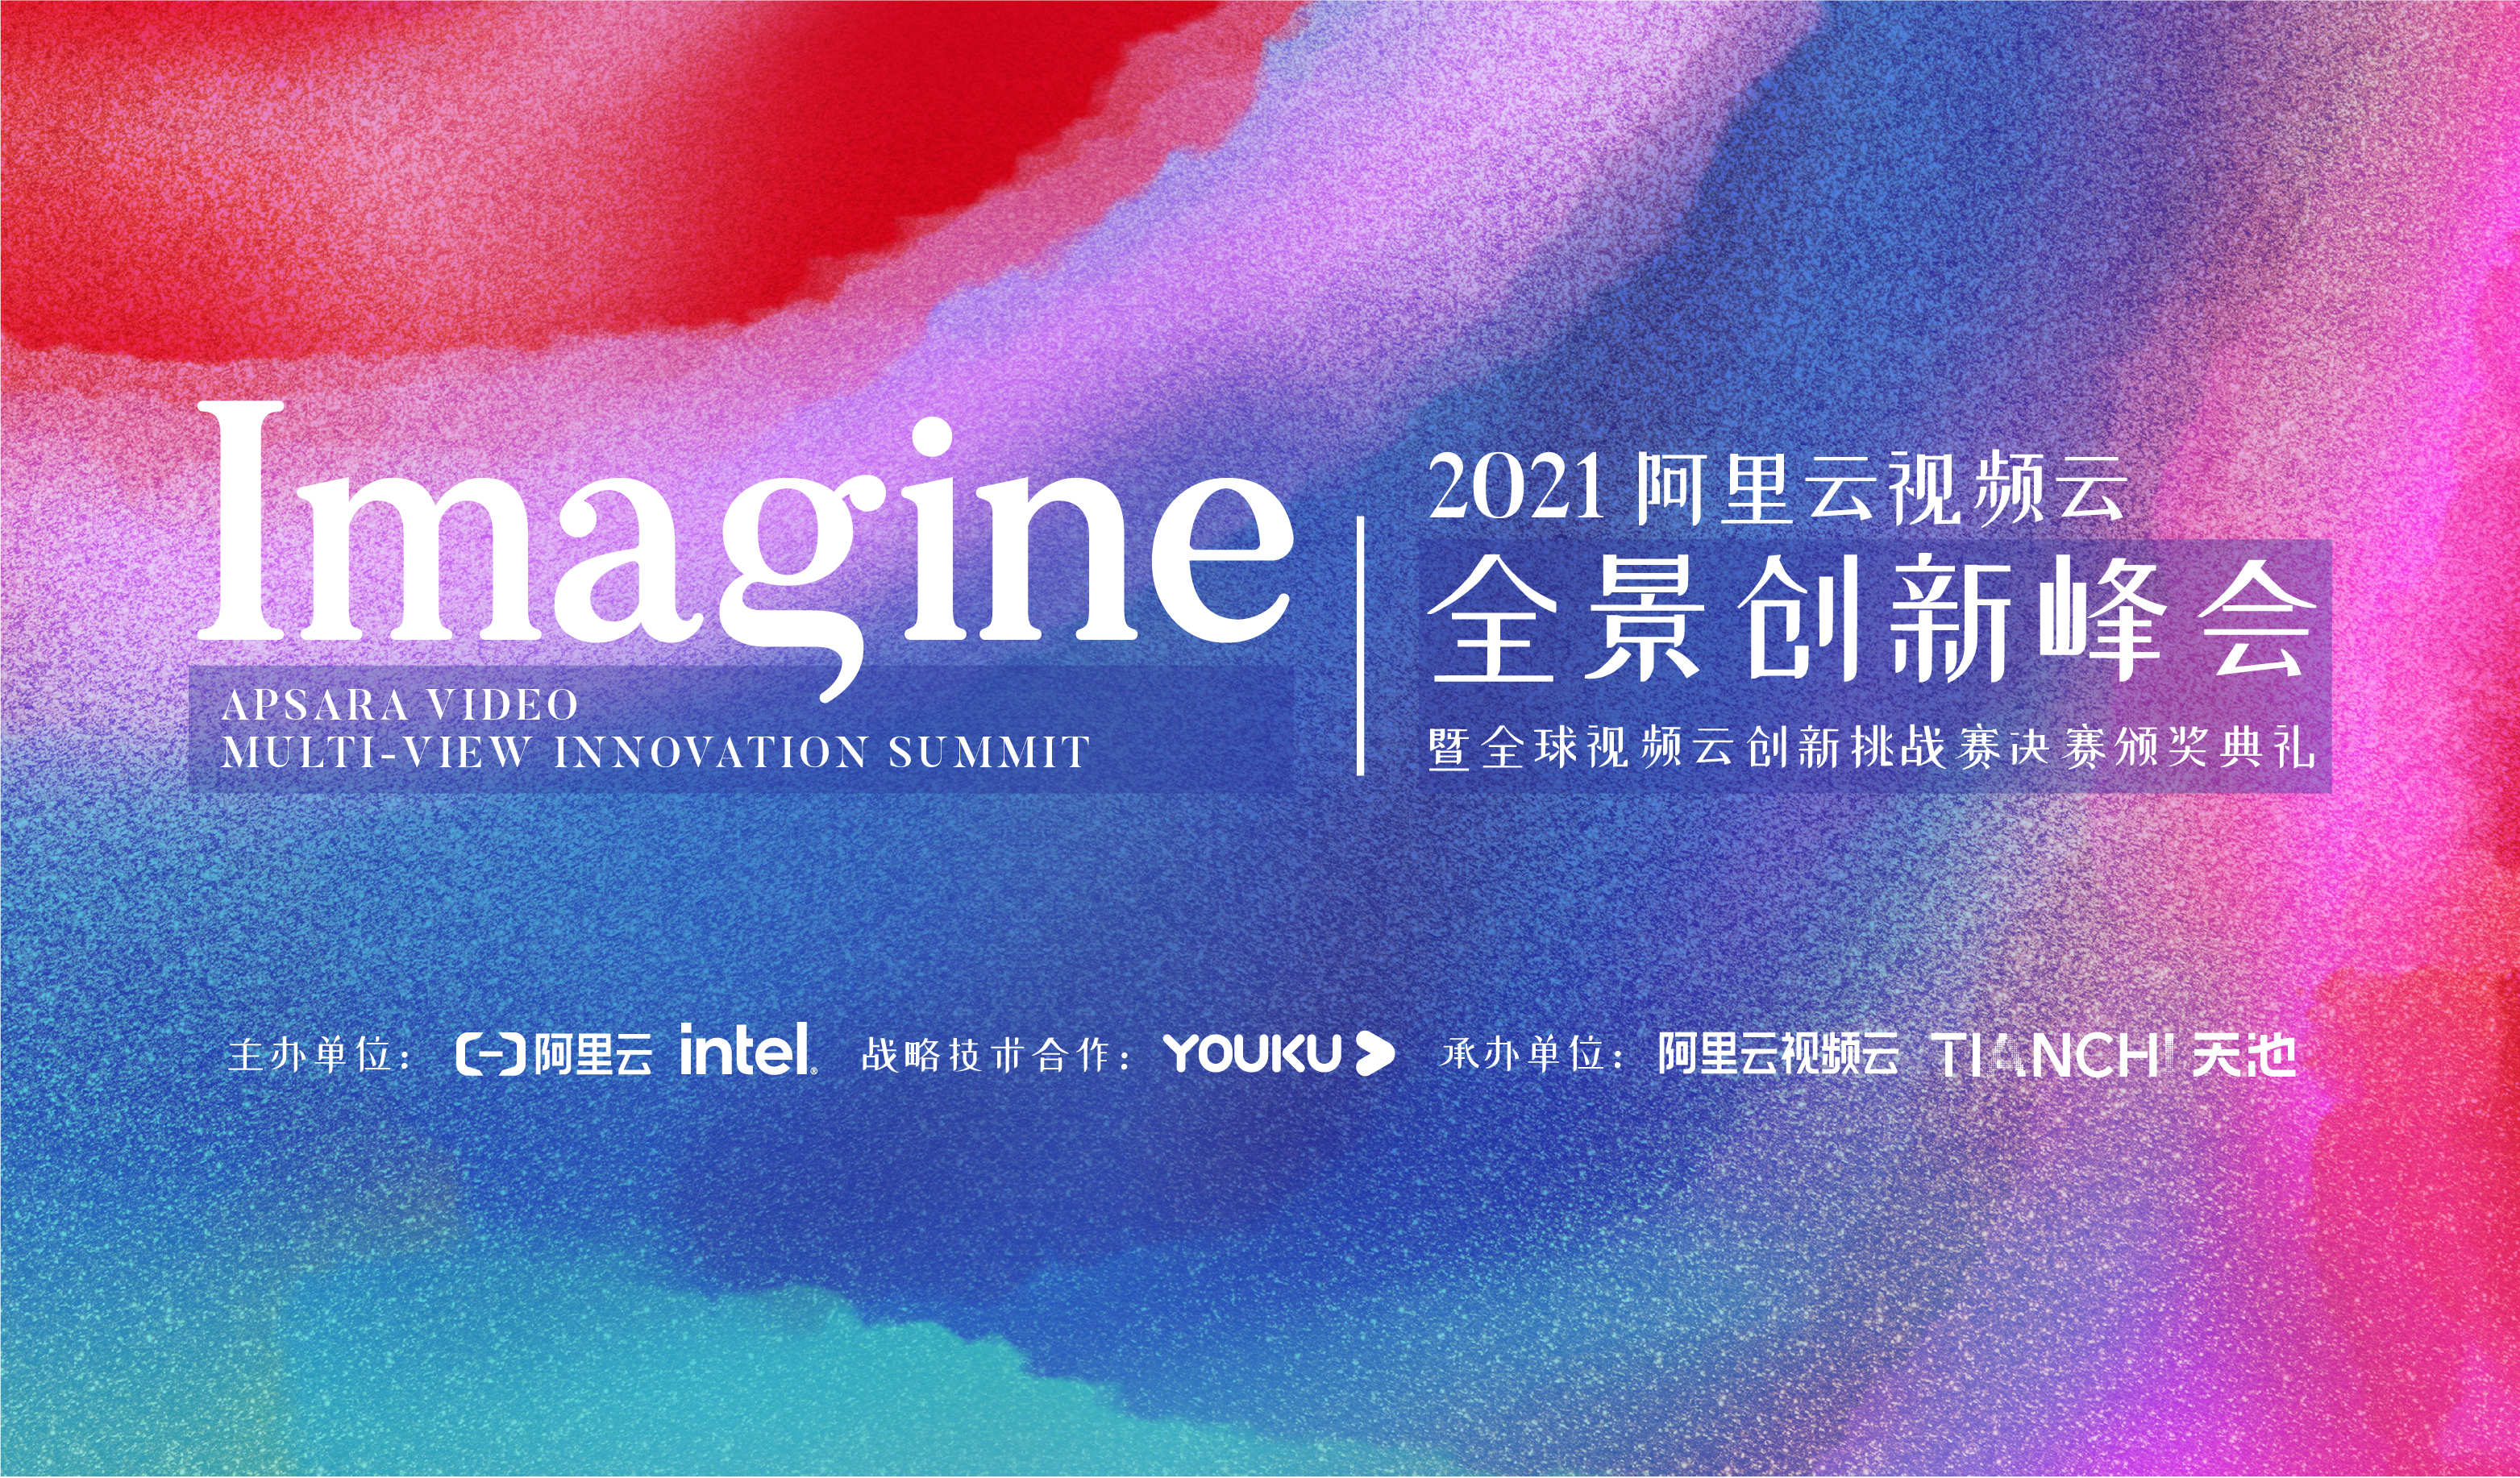 未来，让我们一起想象 — “Imagine” 阿里云视频云全景创新峰会